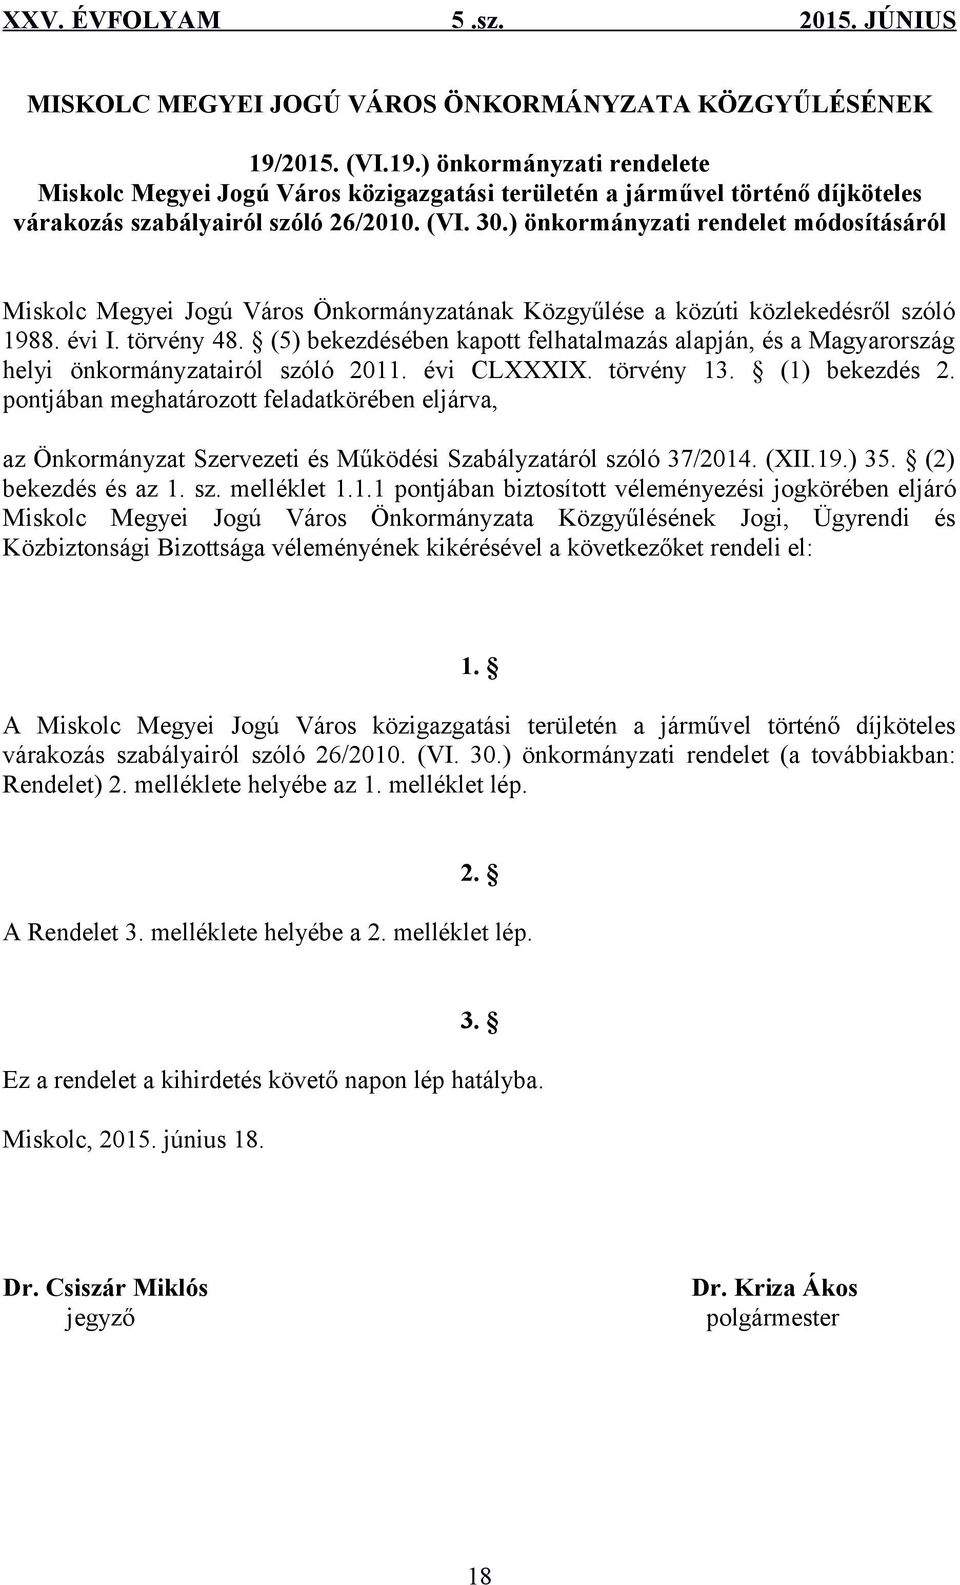 (5) bekezdésében kapott felhatalmazás alapján, és a Magyarország helyi önkormányzatairól szóló 2011. évi CLXXXIX. törvény 13. (1) bekezdés 2.